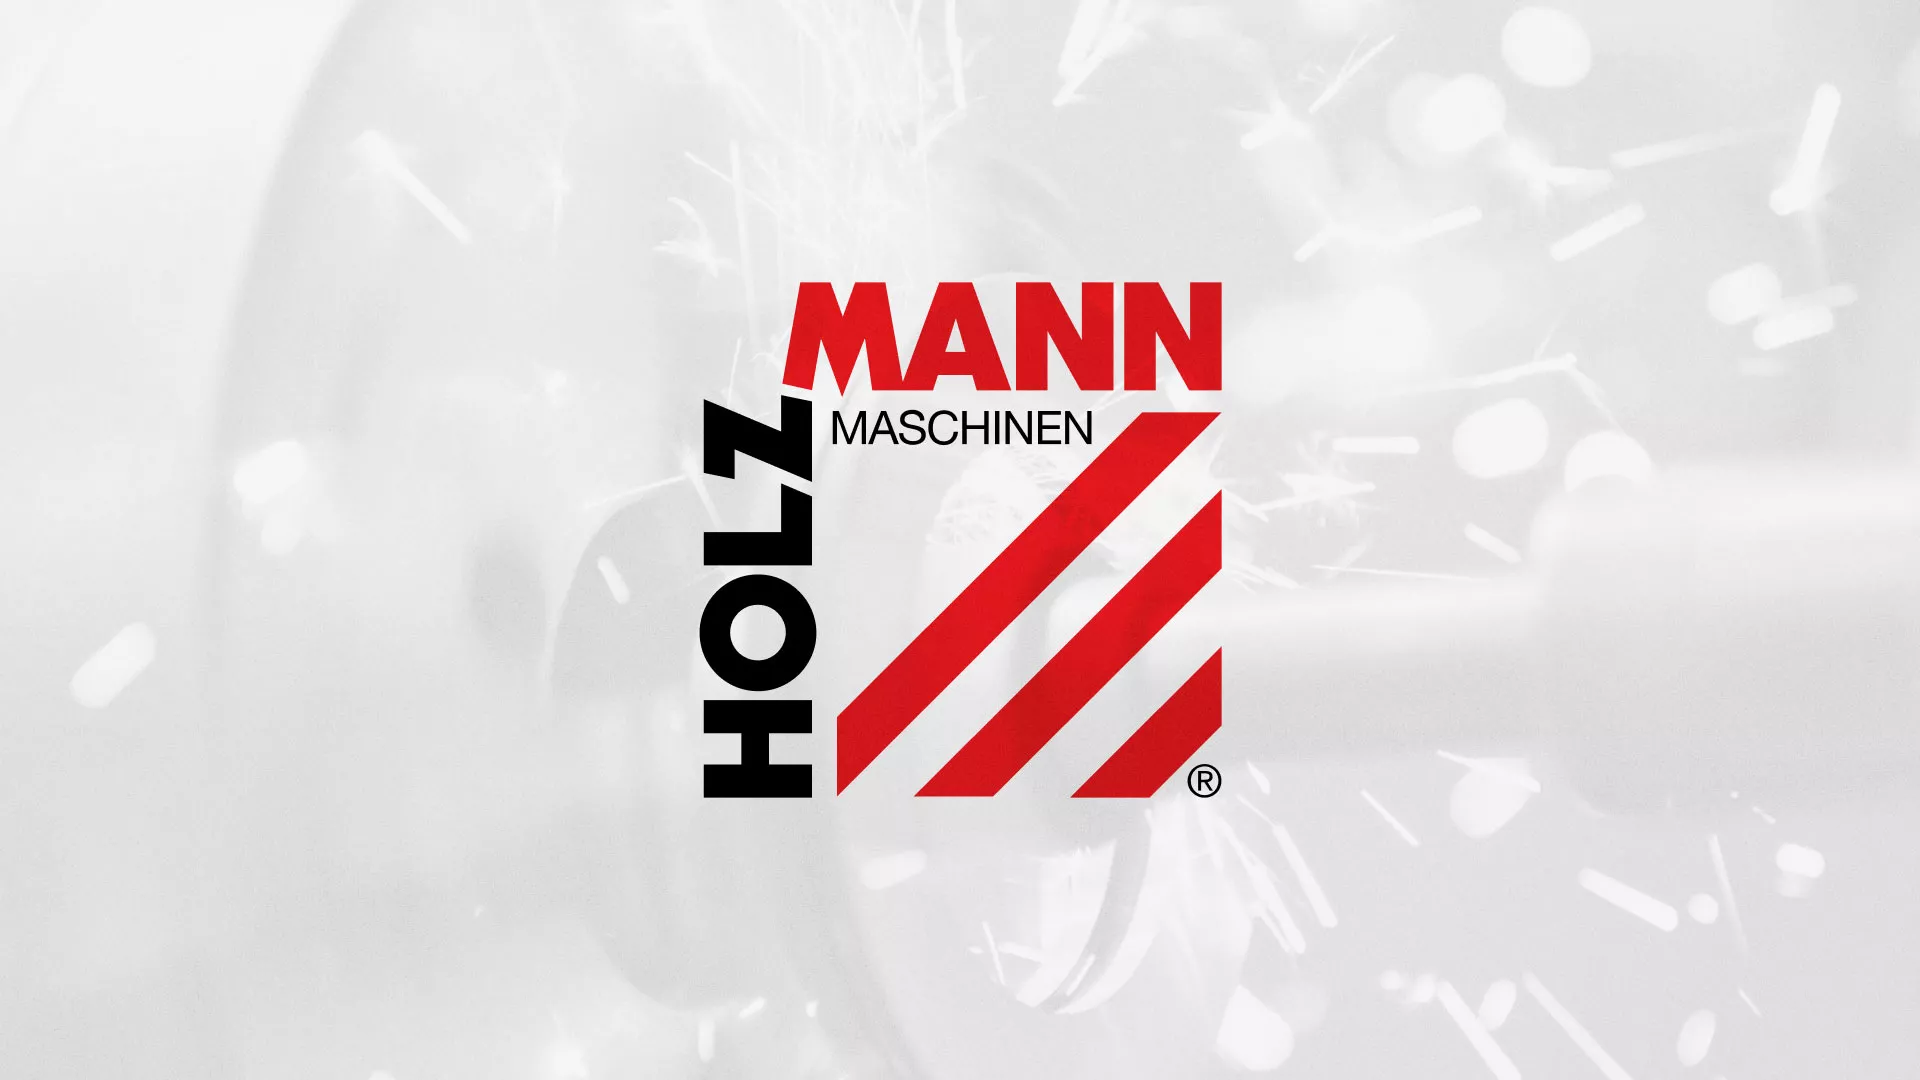 Создание сайта компании «HOLZMANN Maschinen GmbH» в Островном